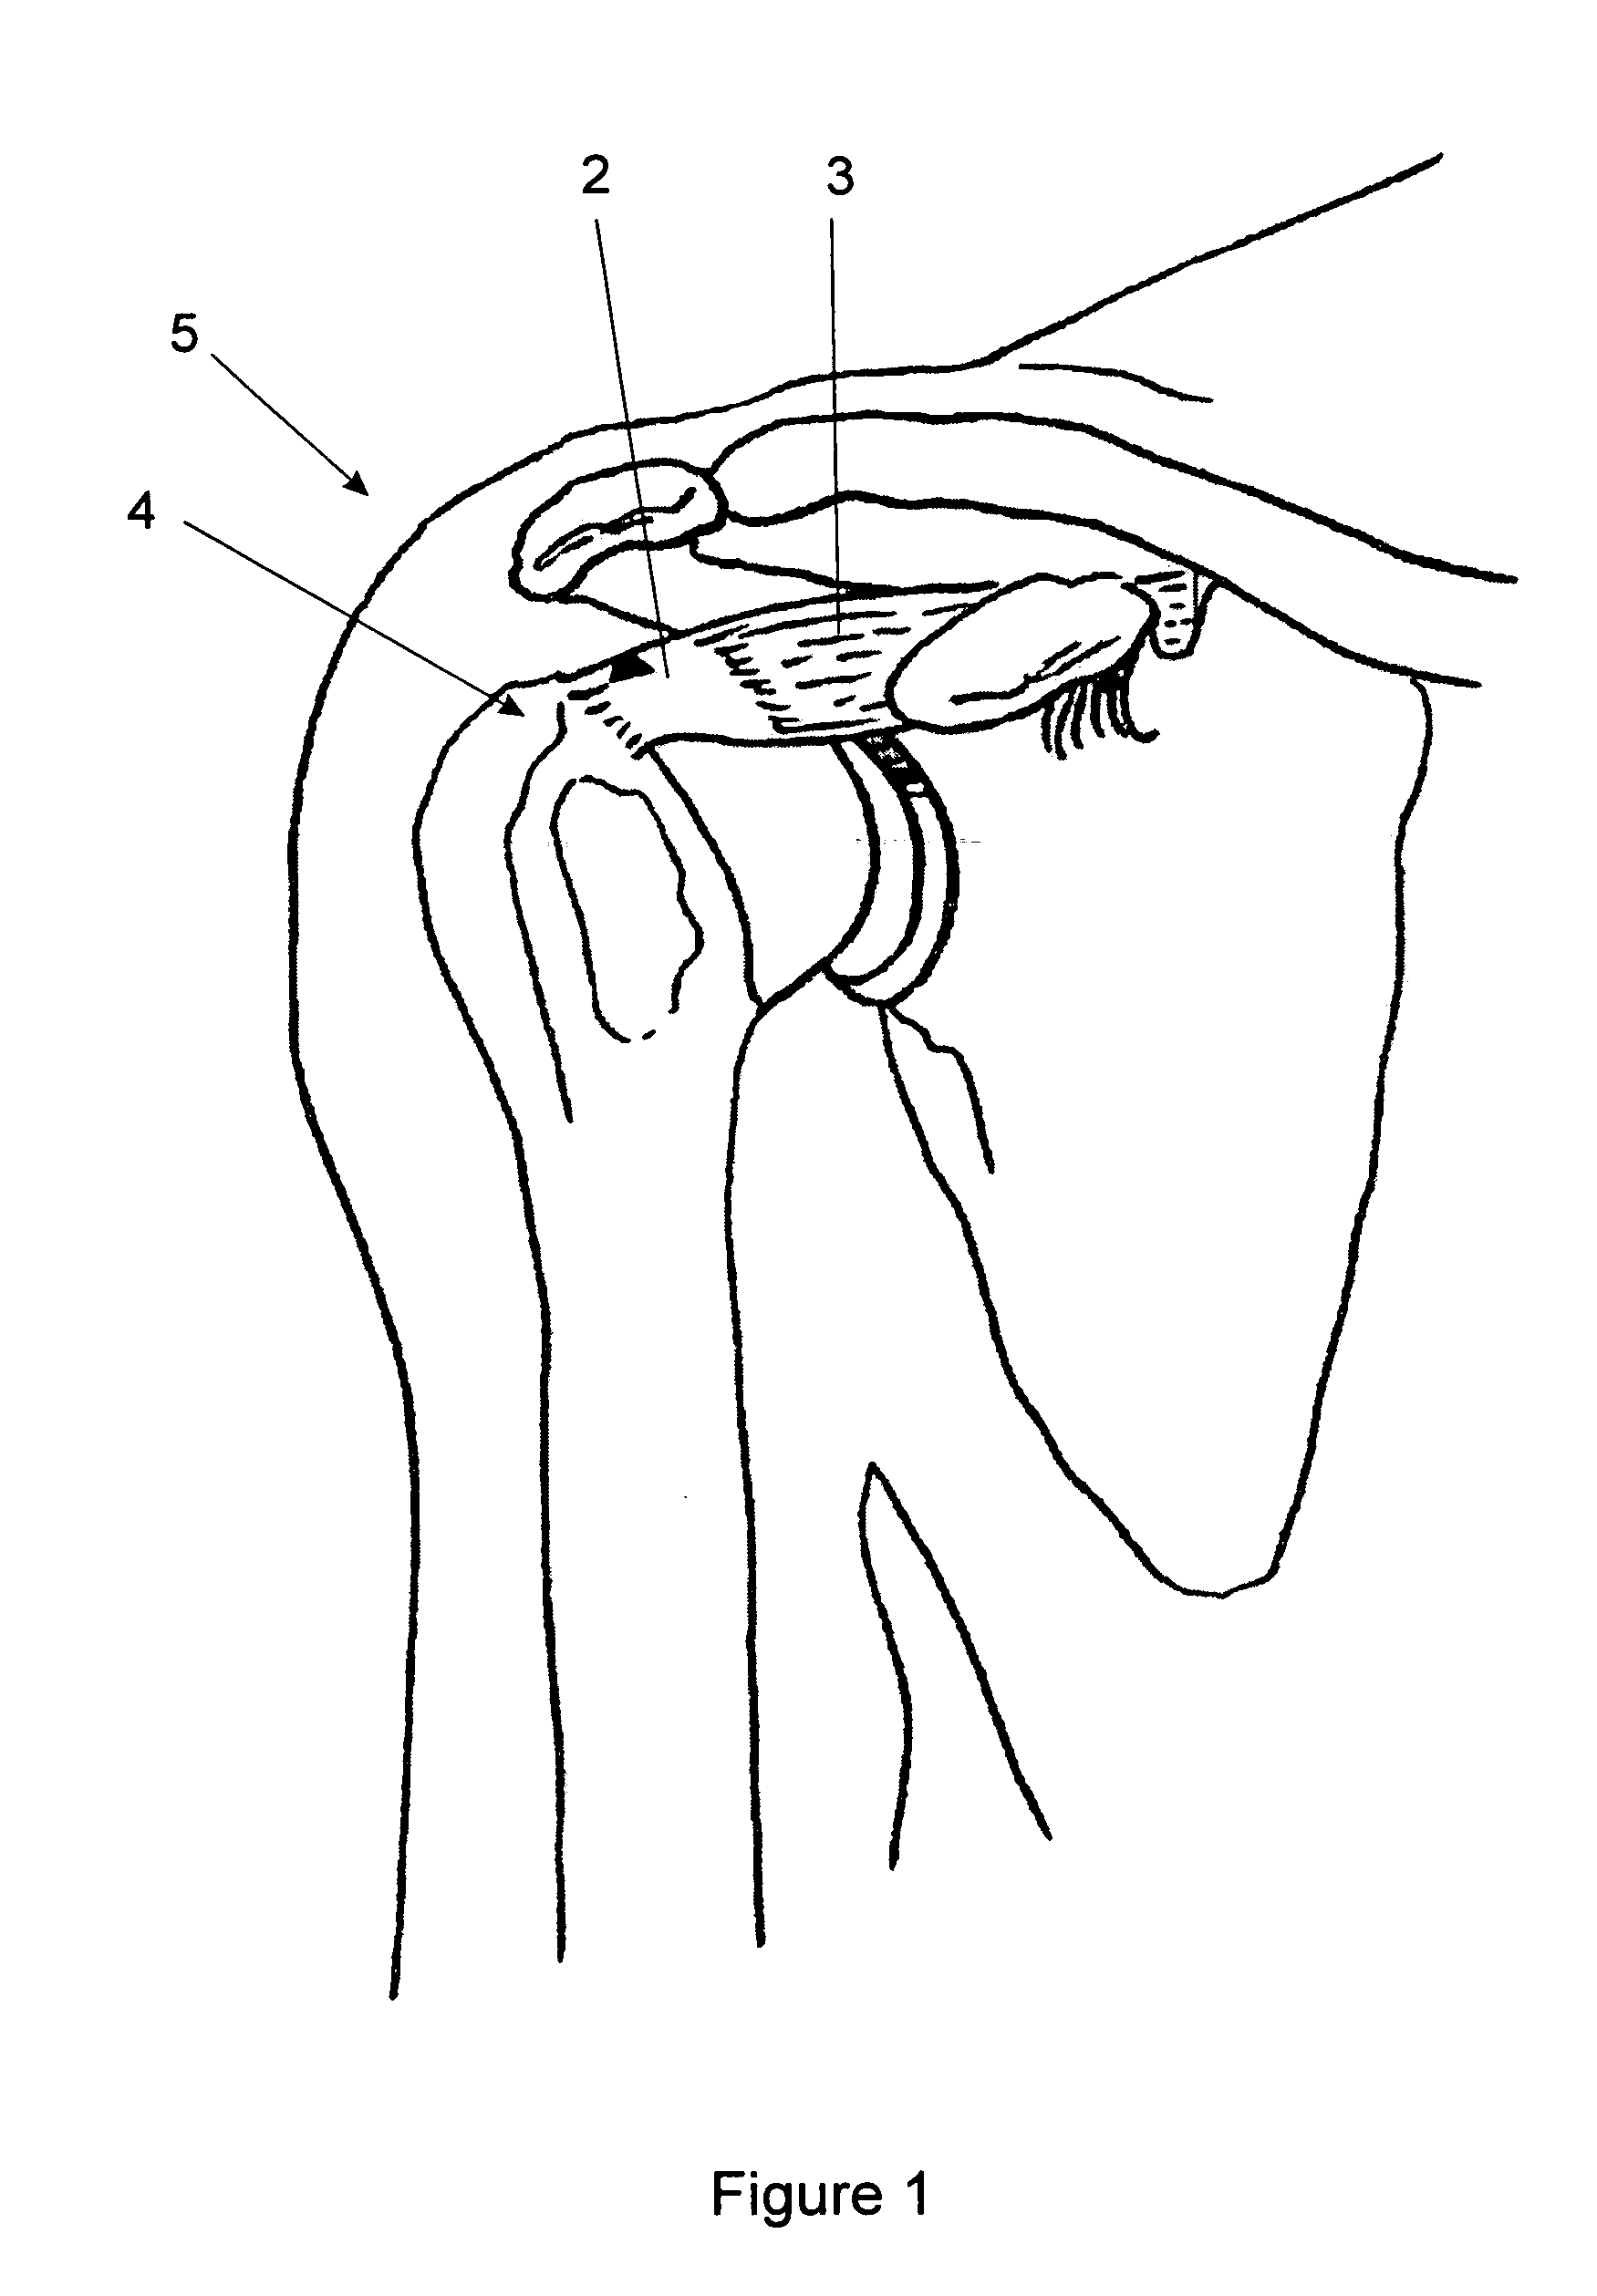 Method of repairing tendons by surgery